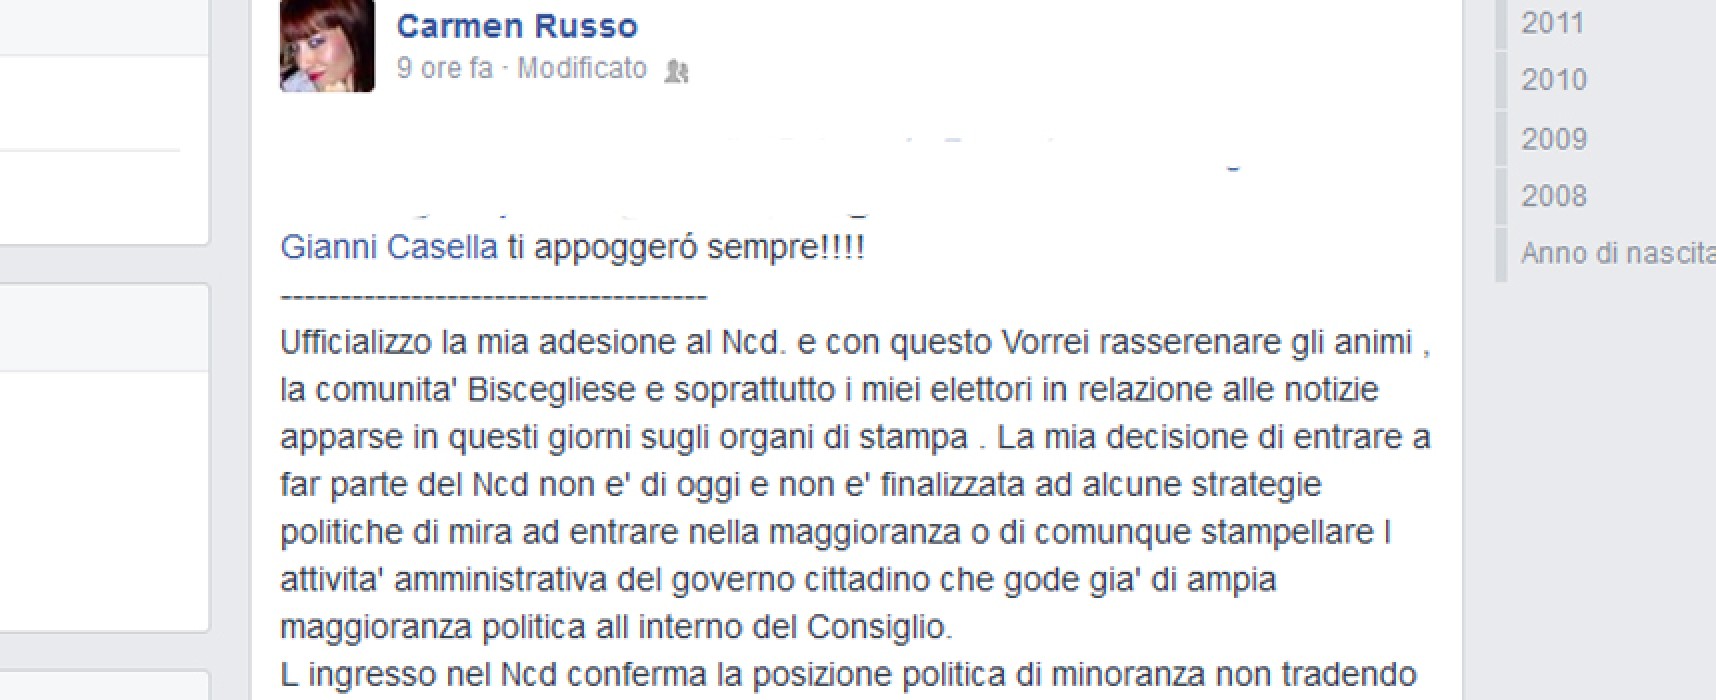 Carmen Russo: “Entro in Ncd ma in consiglio no”, Alfonso Russo: “Ma per cortesia”